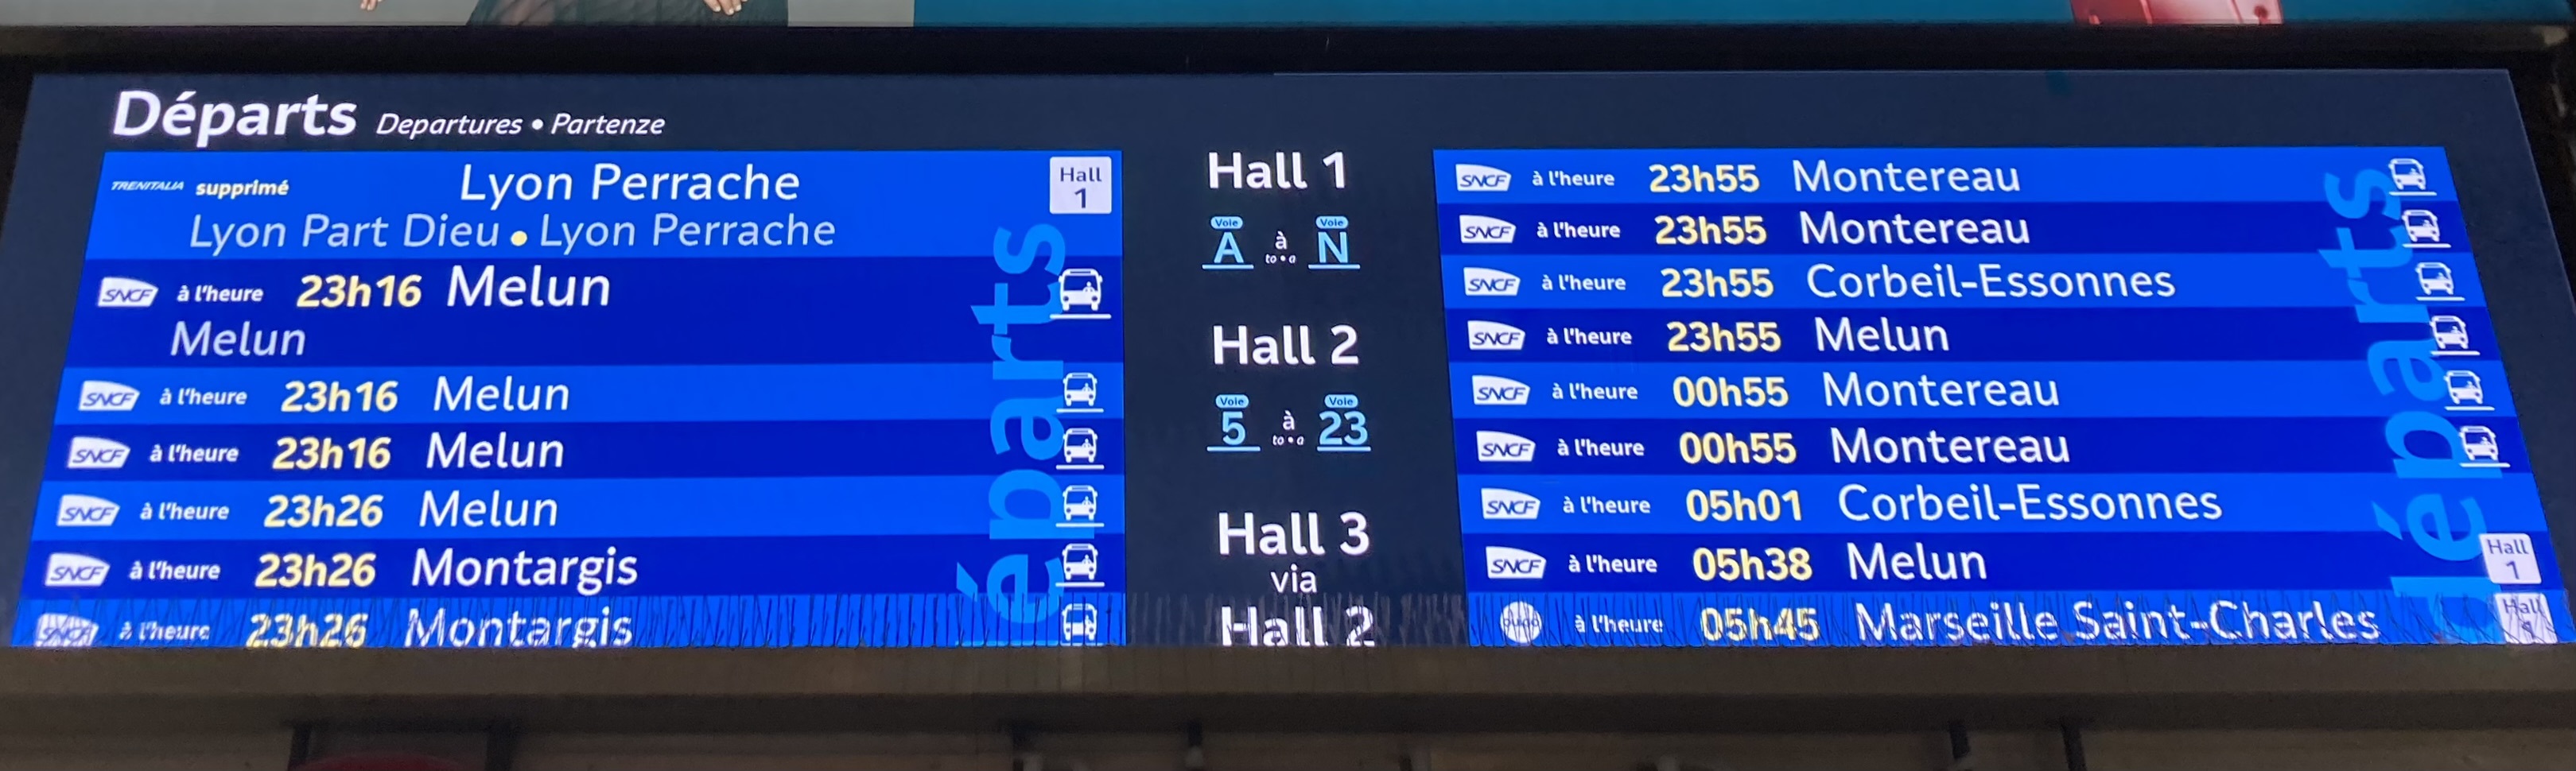 panneau des départ SNCF pour Moret